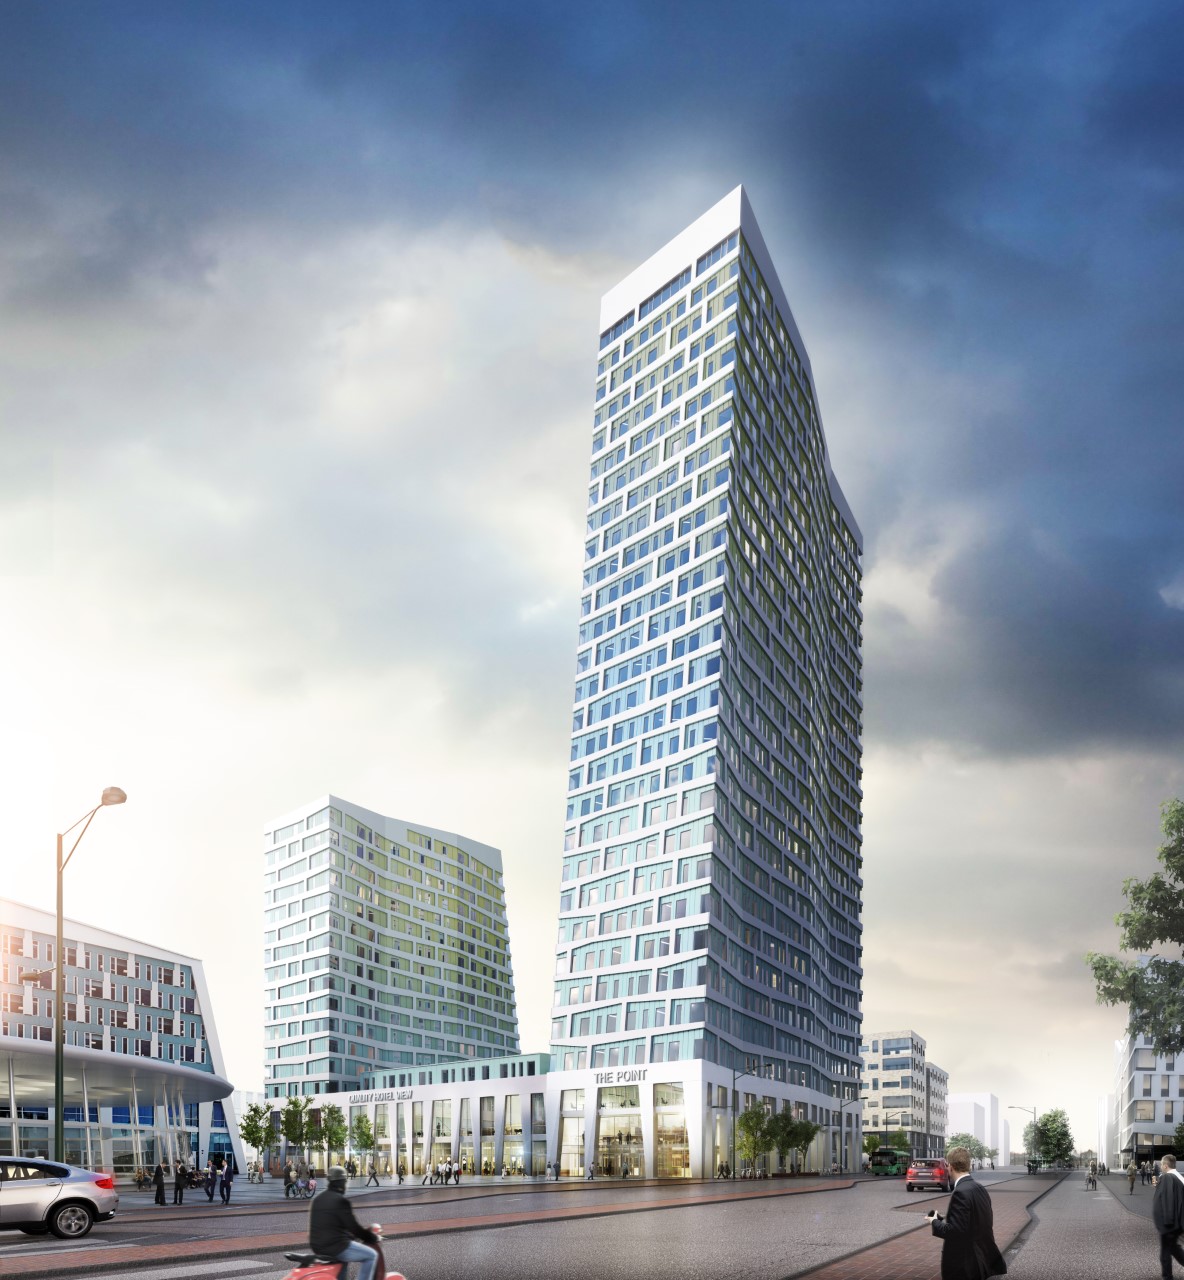 Point Hyllie är ett av de mest spektakulära projekten i Skåneregionen och kommer att bli Öresundsregionens högsta kontorshus.